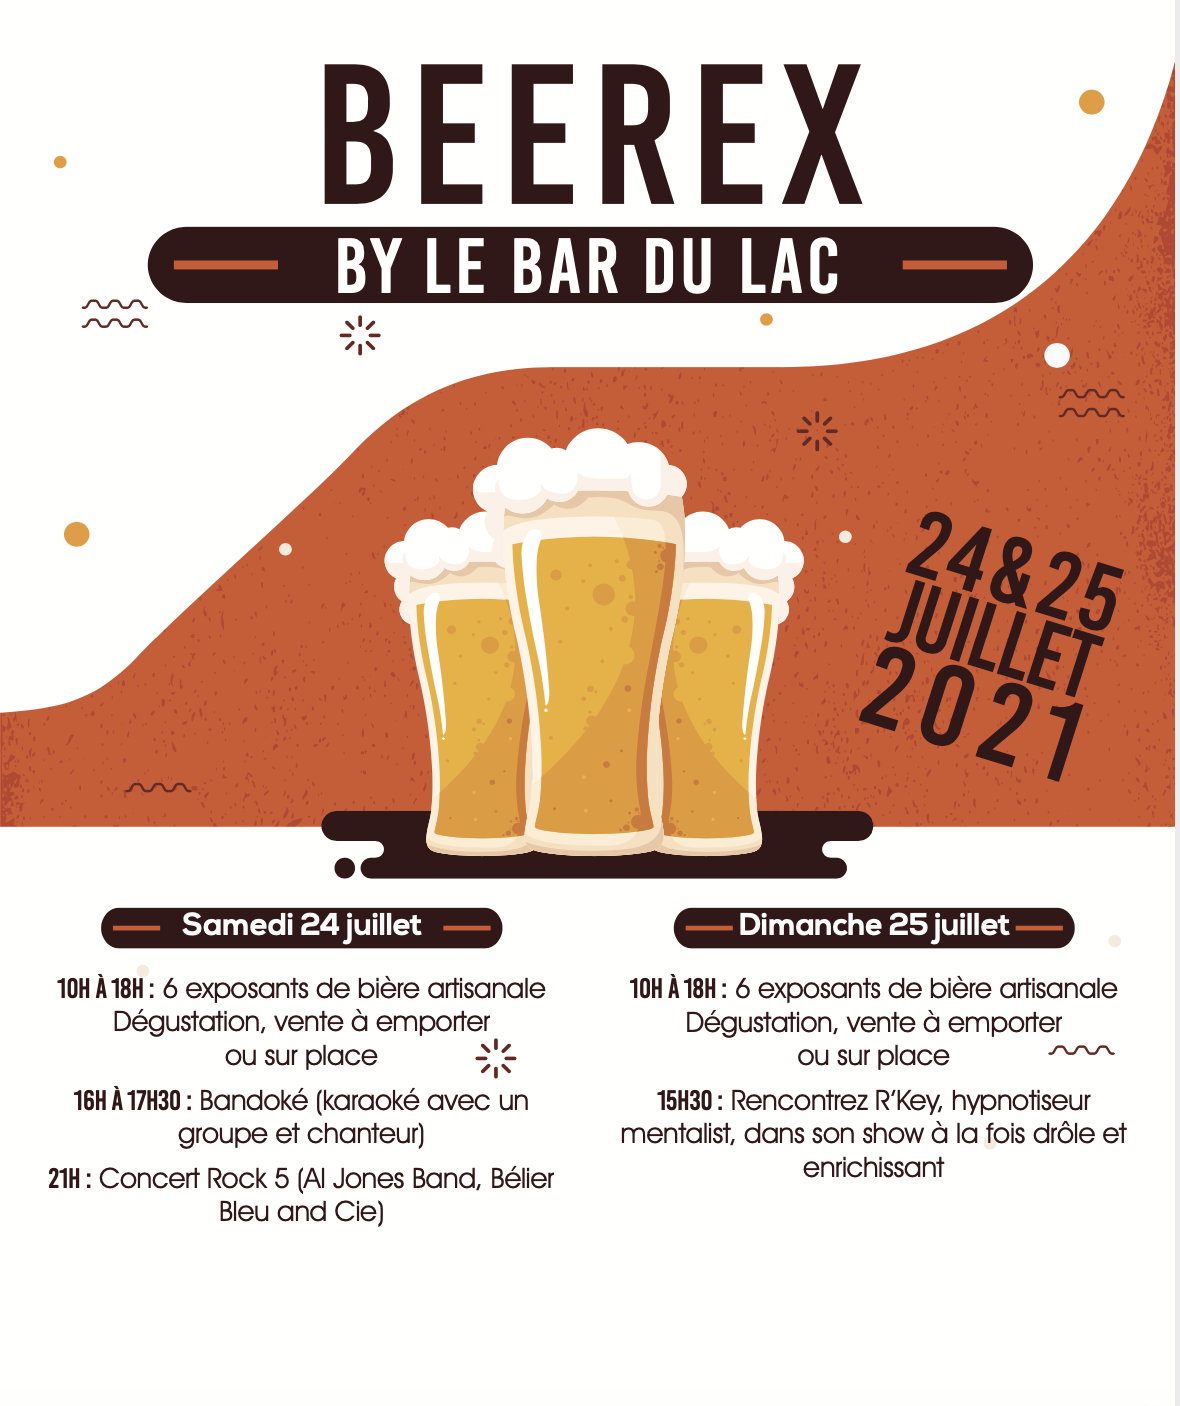 Fête de la Bière Beer Ex Bar du Lac Bozel